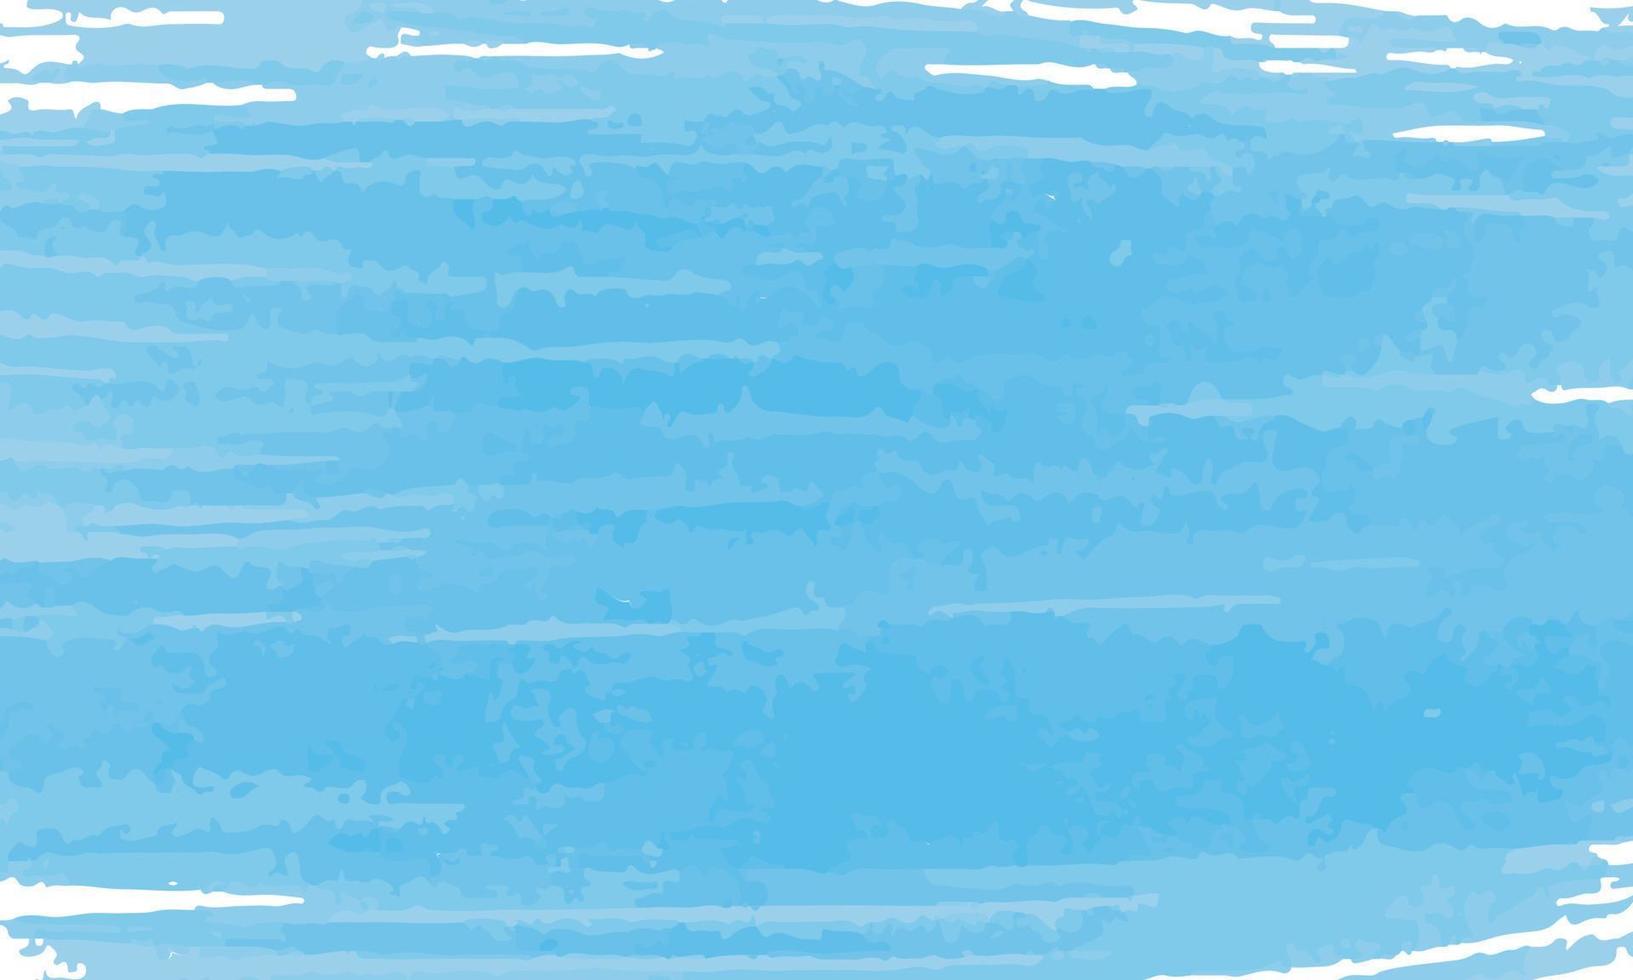 aquarell blauer hintergrund handzeichnung abstraktes muster gemalt helle farbe papier oder holz große pinselstriche thema meer, himmel, ferien, sommervektor vektor